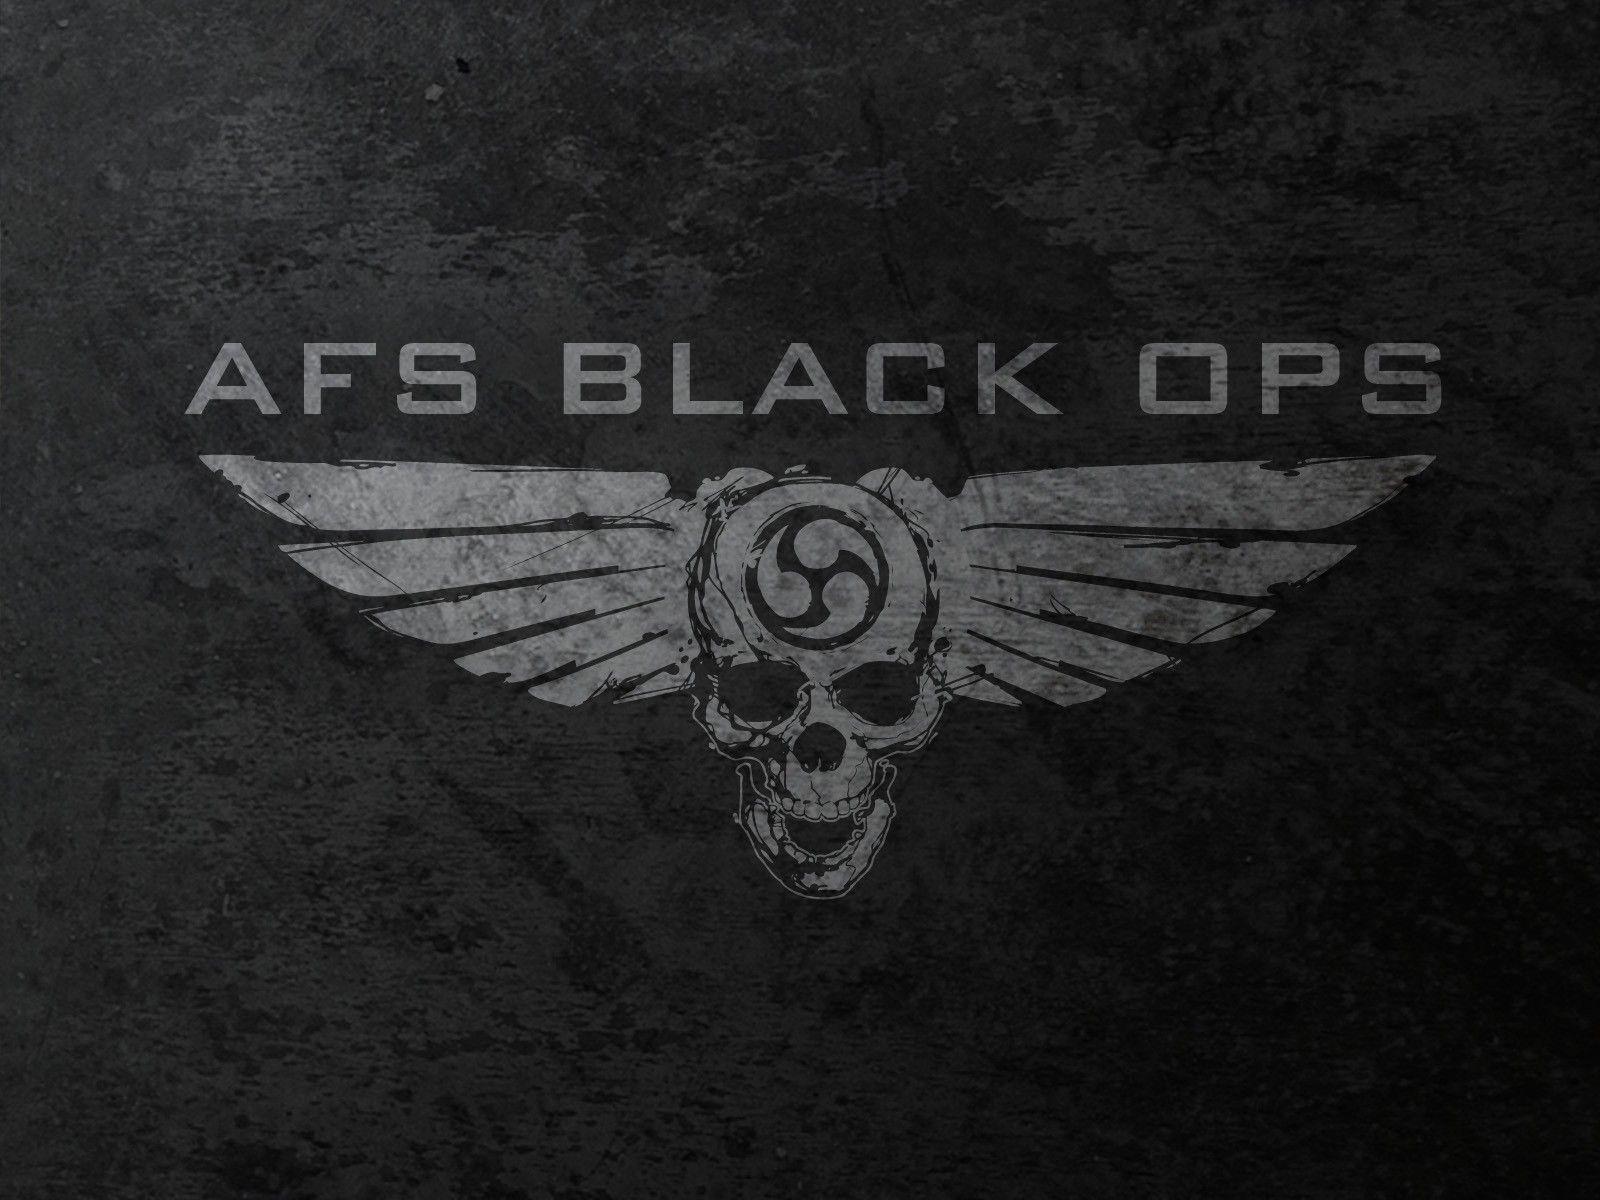 Download Black Ops Similar All Top Wallpaper 1600x1200. HD